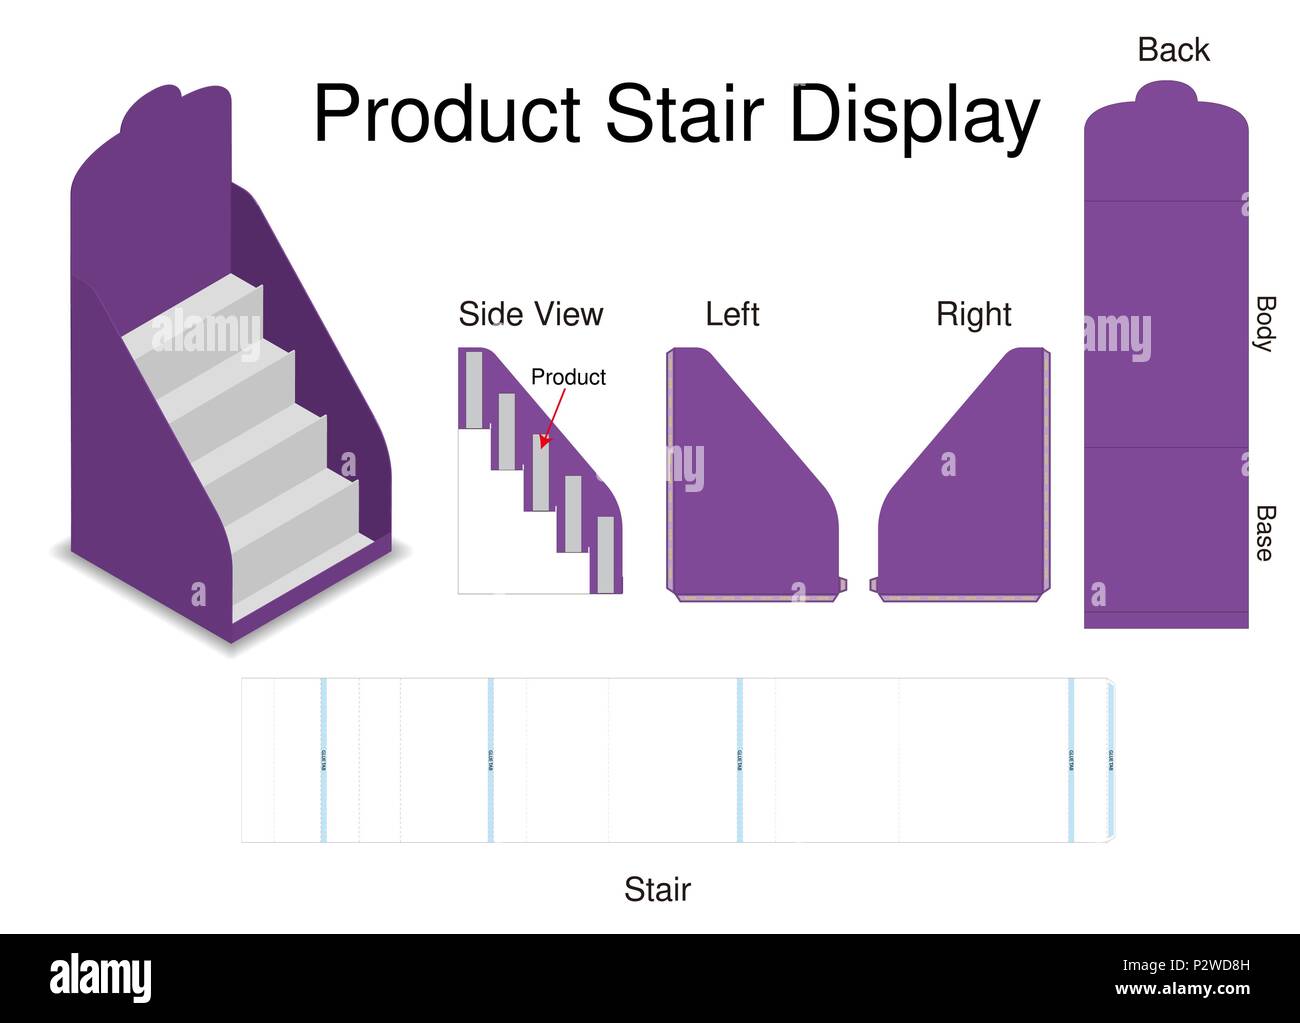 Des maquettes d'escalier produits d'affichage avec découpe Illustration de Vecteur